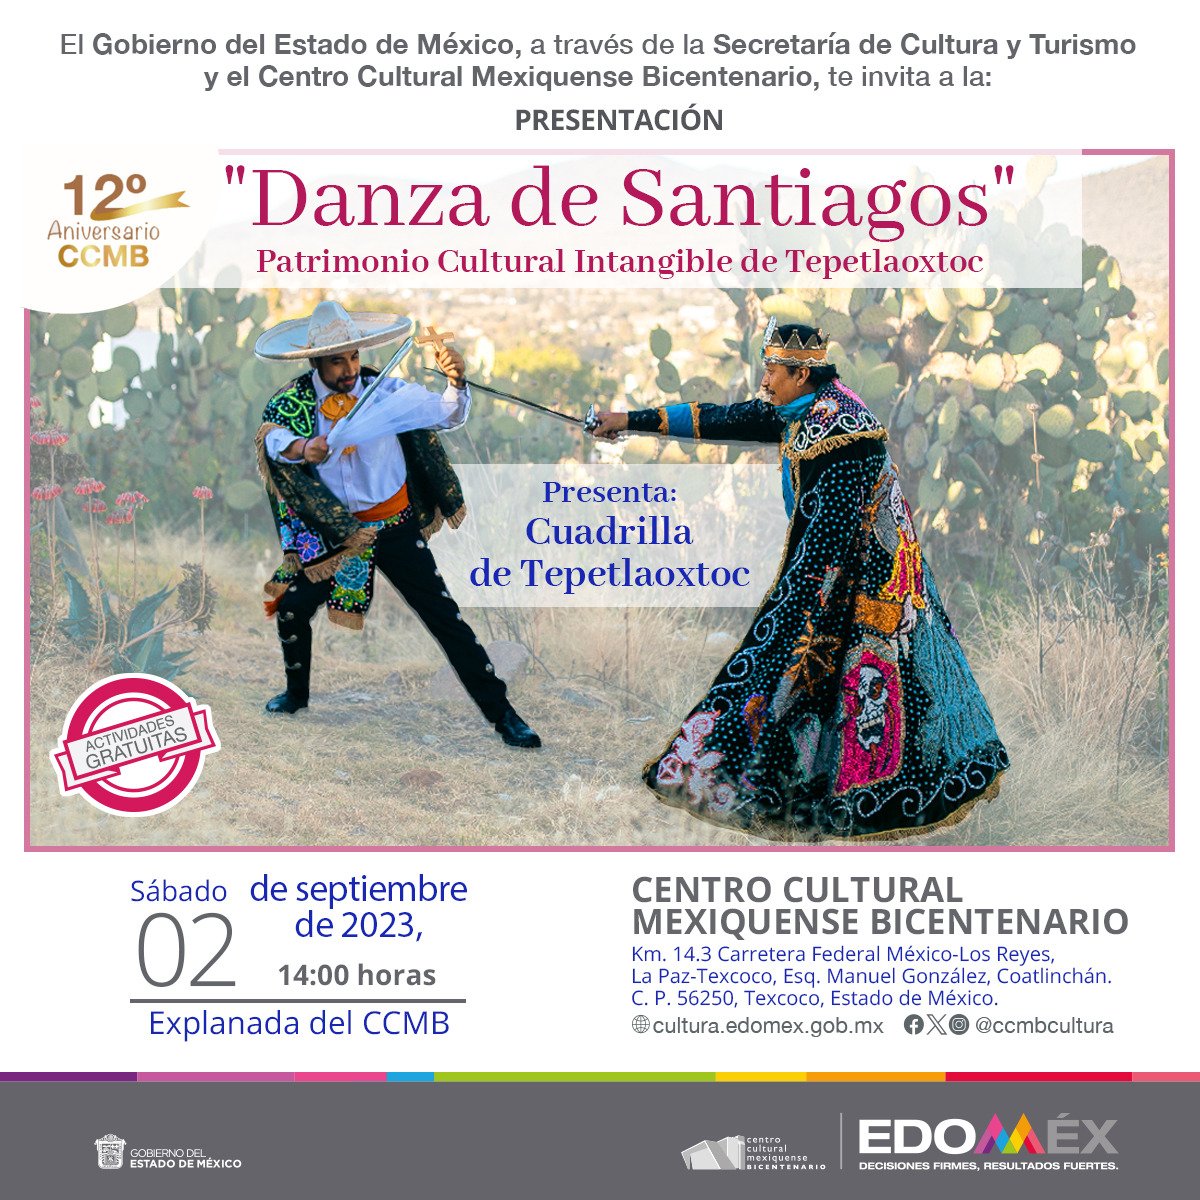 Danza de los Santiagos Patrimonio Cultural Intangible de #Tepetlaoxtoc Estado de México.
2 de Septiembre en el @ccmbcultura